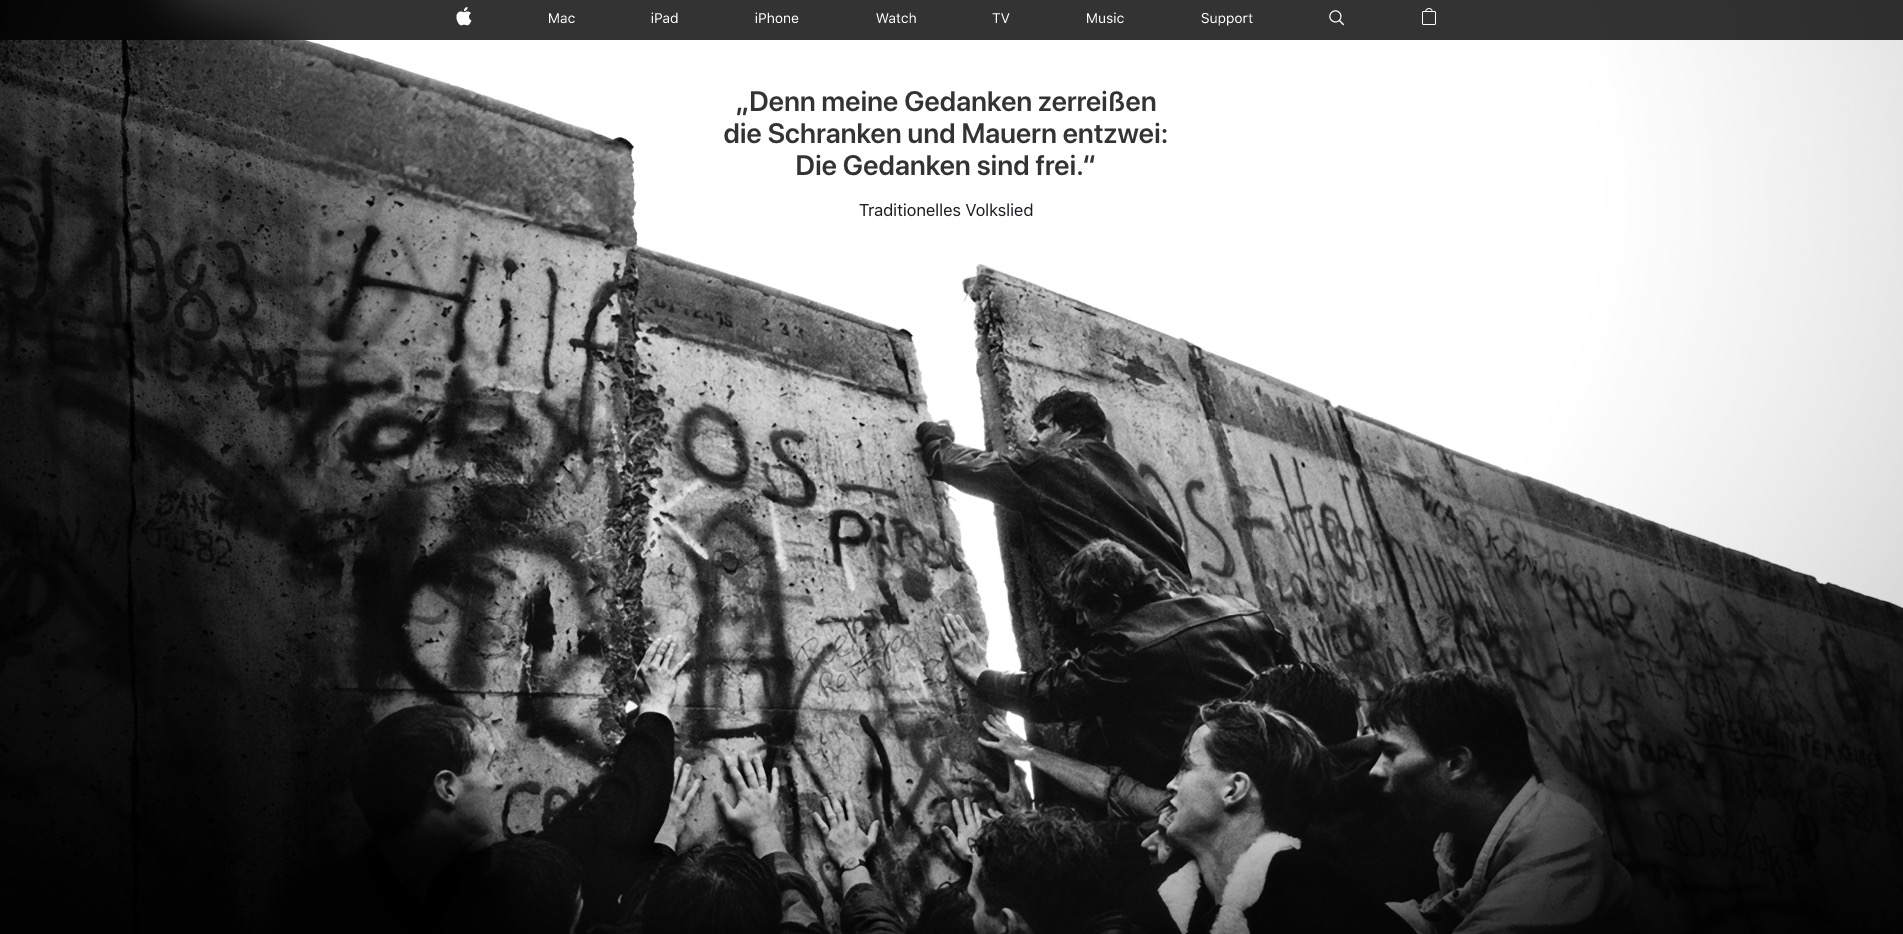 苹果德国官网更换广告:纪念柏林墙倒塌 30 周年